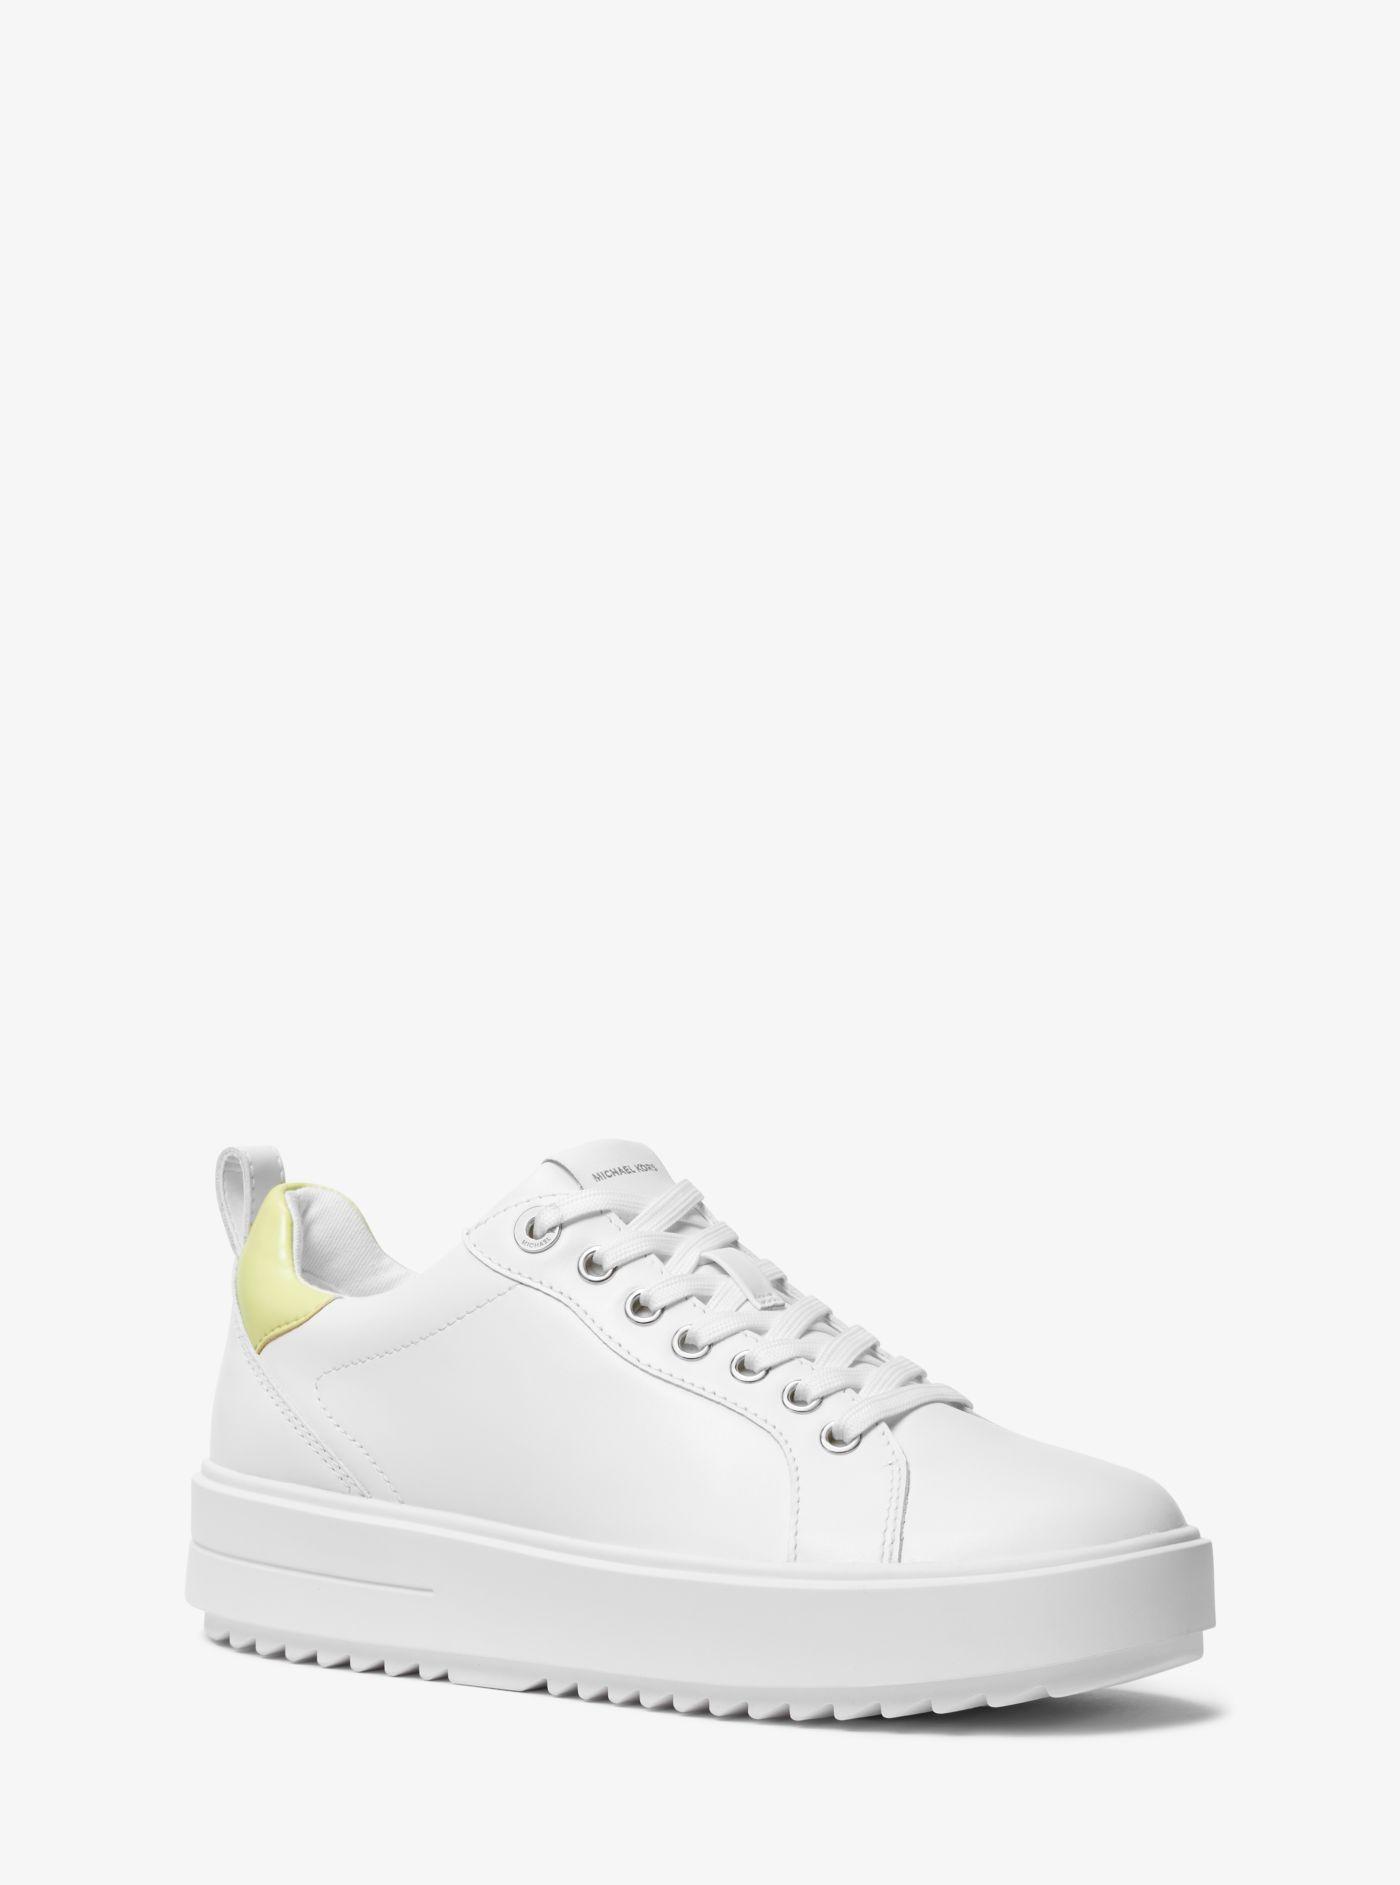 Michael Kors Emmett Leather Sneaker in White | Lyst